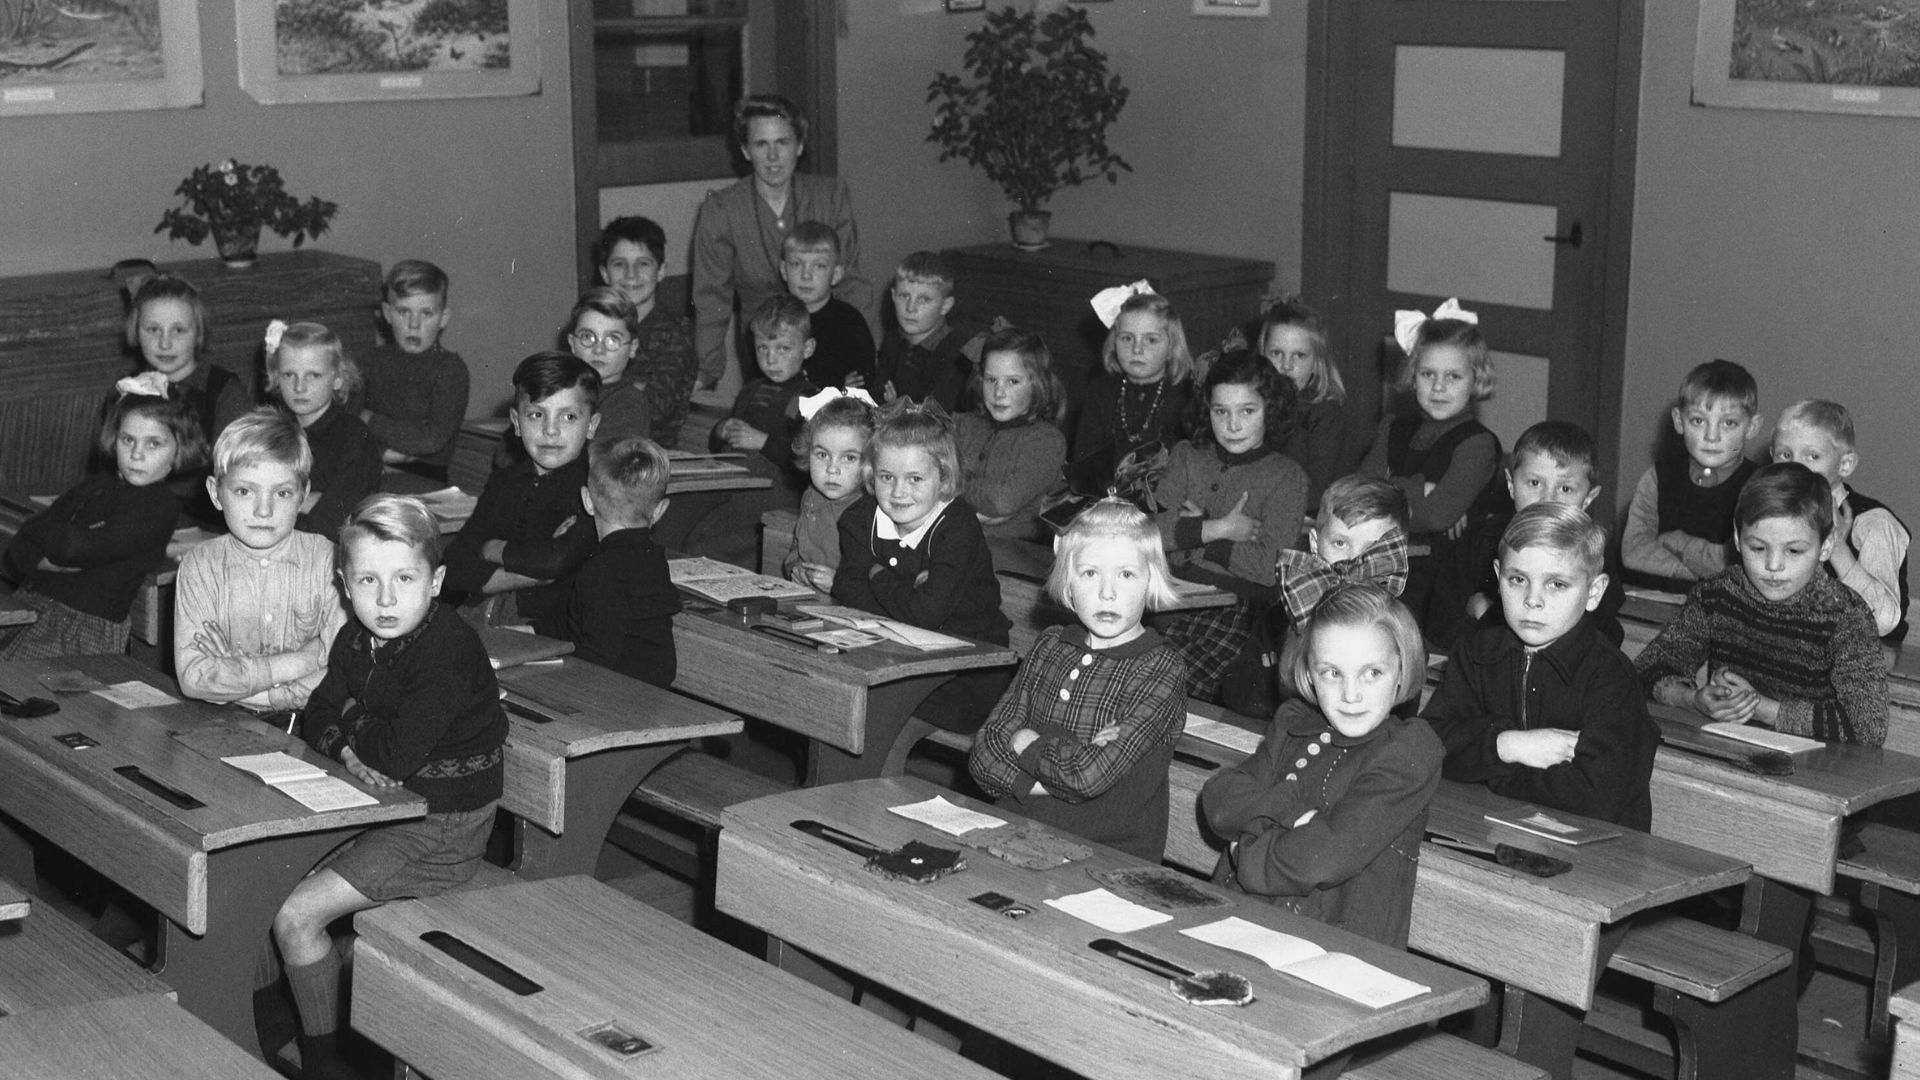 Basisschool herinneringen jaren ‘50. Uitgelichte afbeelding